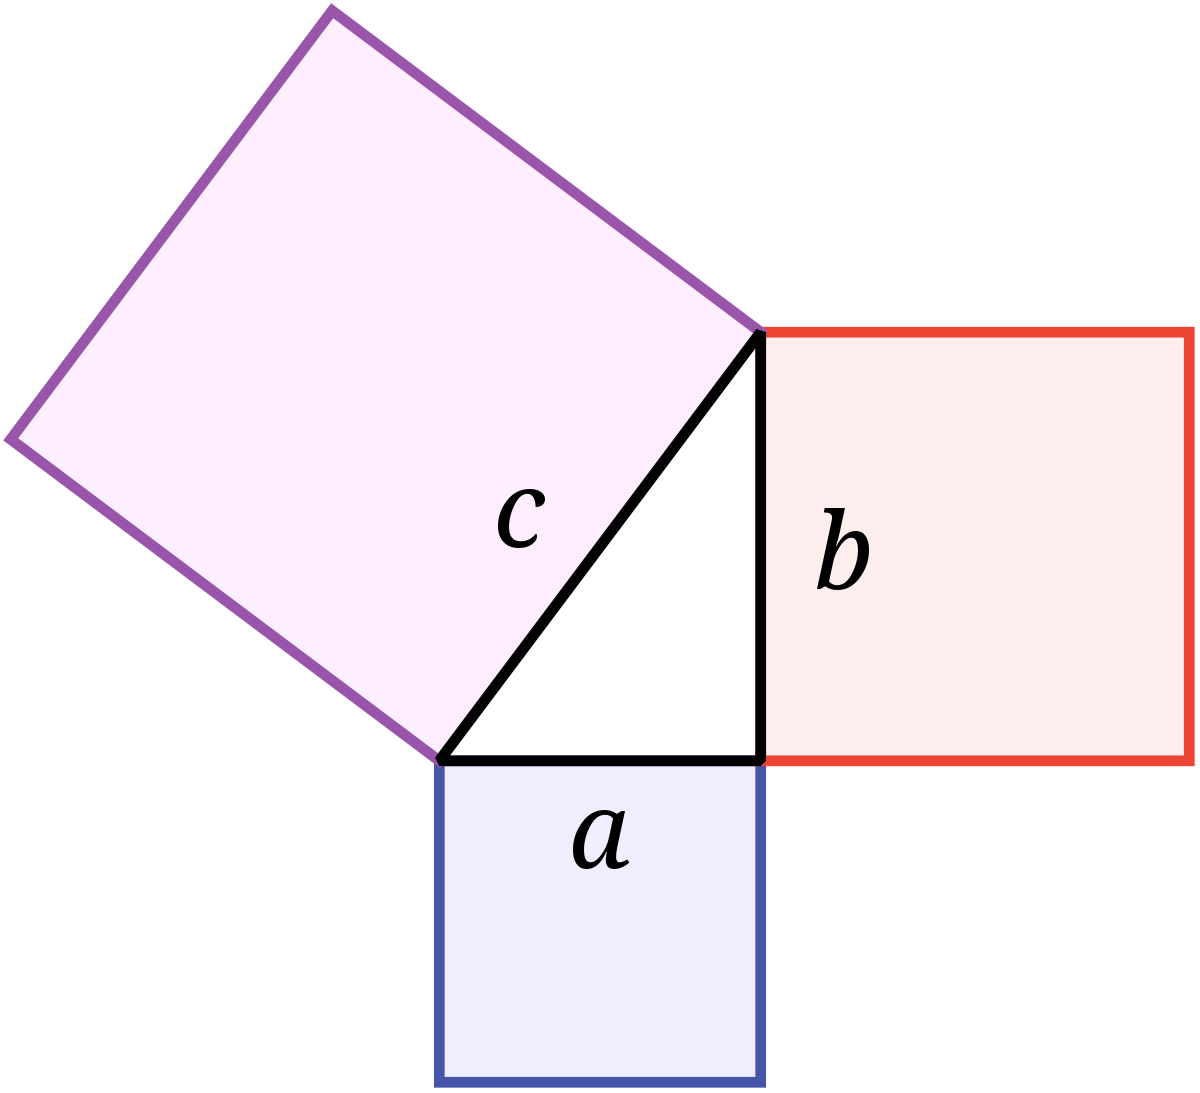 تصف نظرية فيثاغورس العلاقة بين طولي الساقين والوتر في المثلث